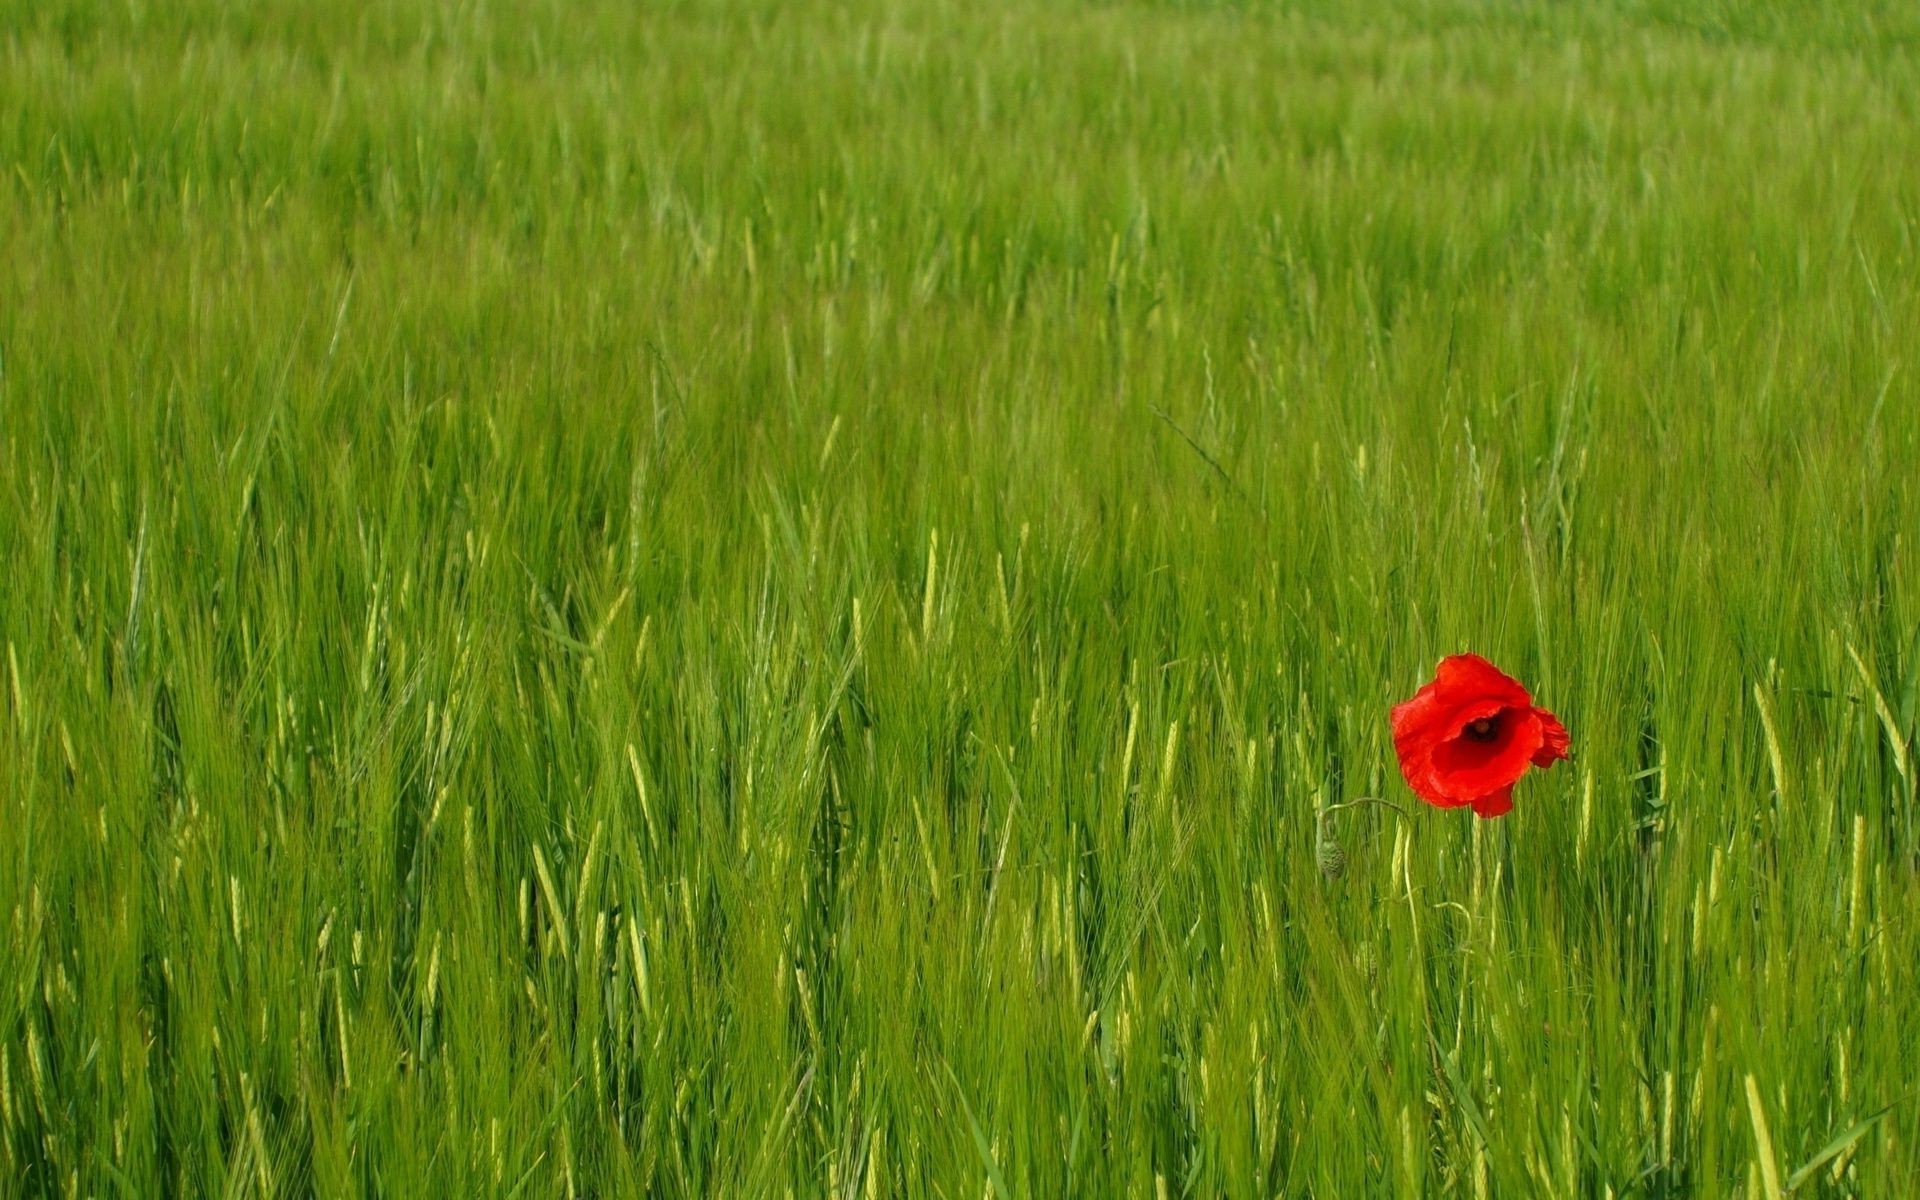 цветы поле сельских пшеницы пастбище ферма хлопья сенокос трава рост сельское хозяйство лето сельской местности урожай природа флора страна пейзаж на открытом воздухе среды